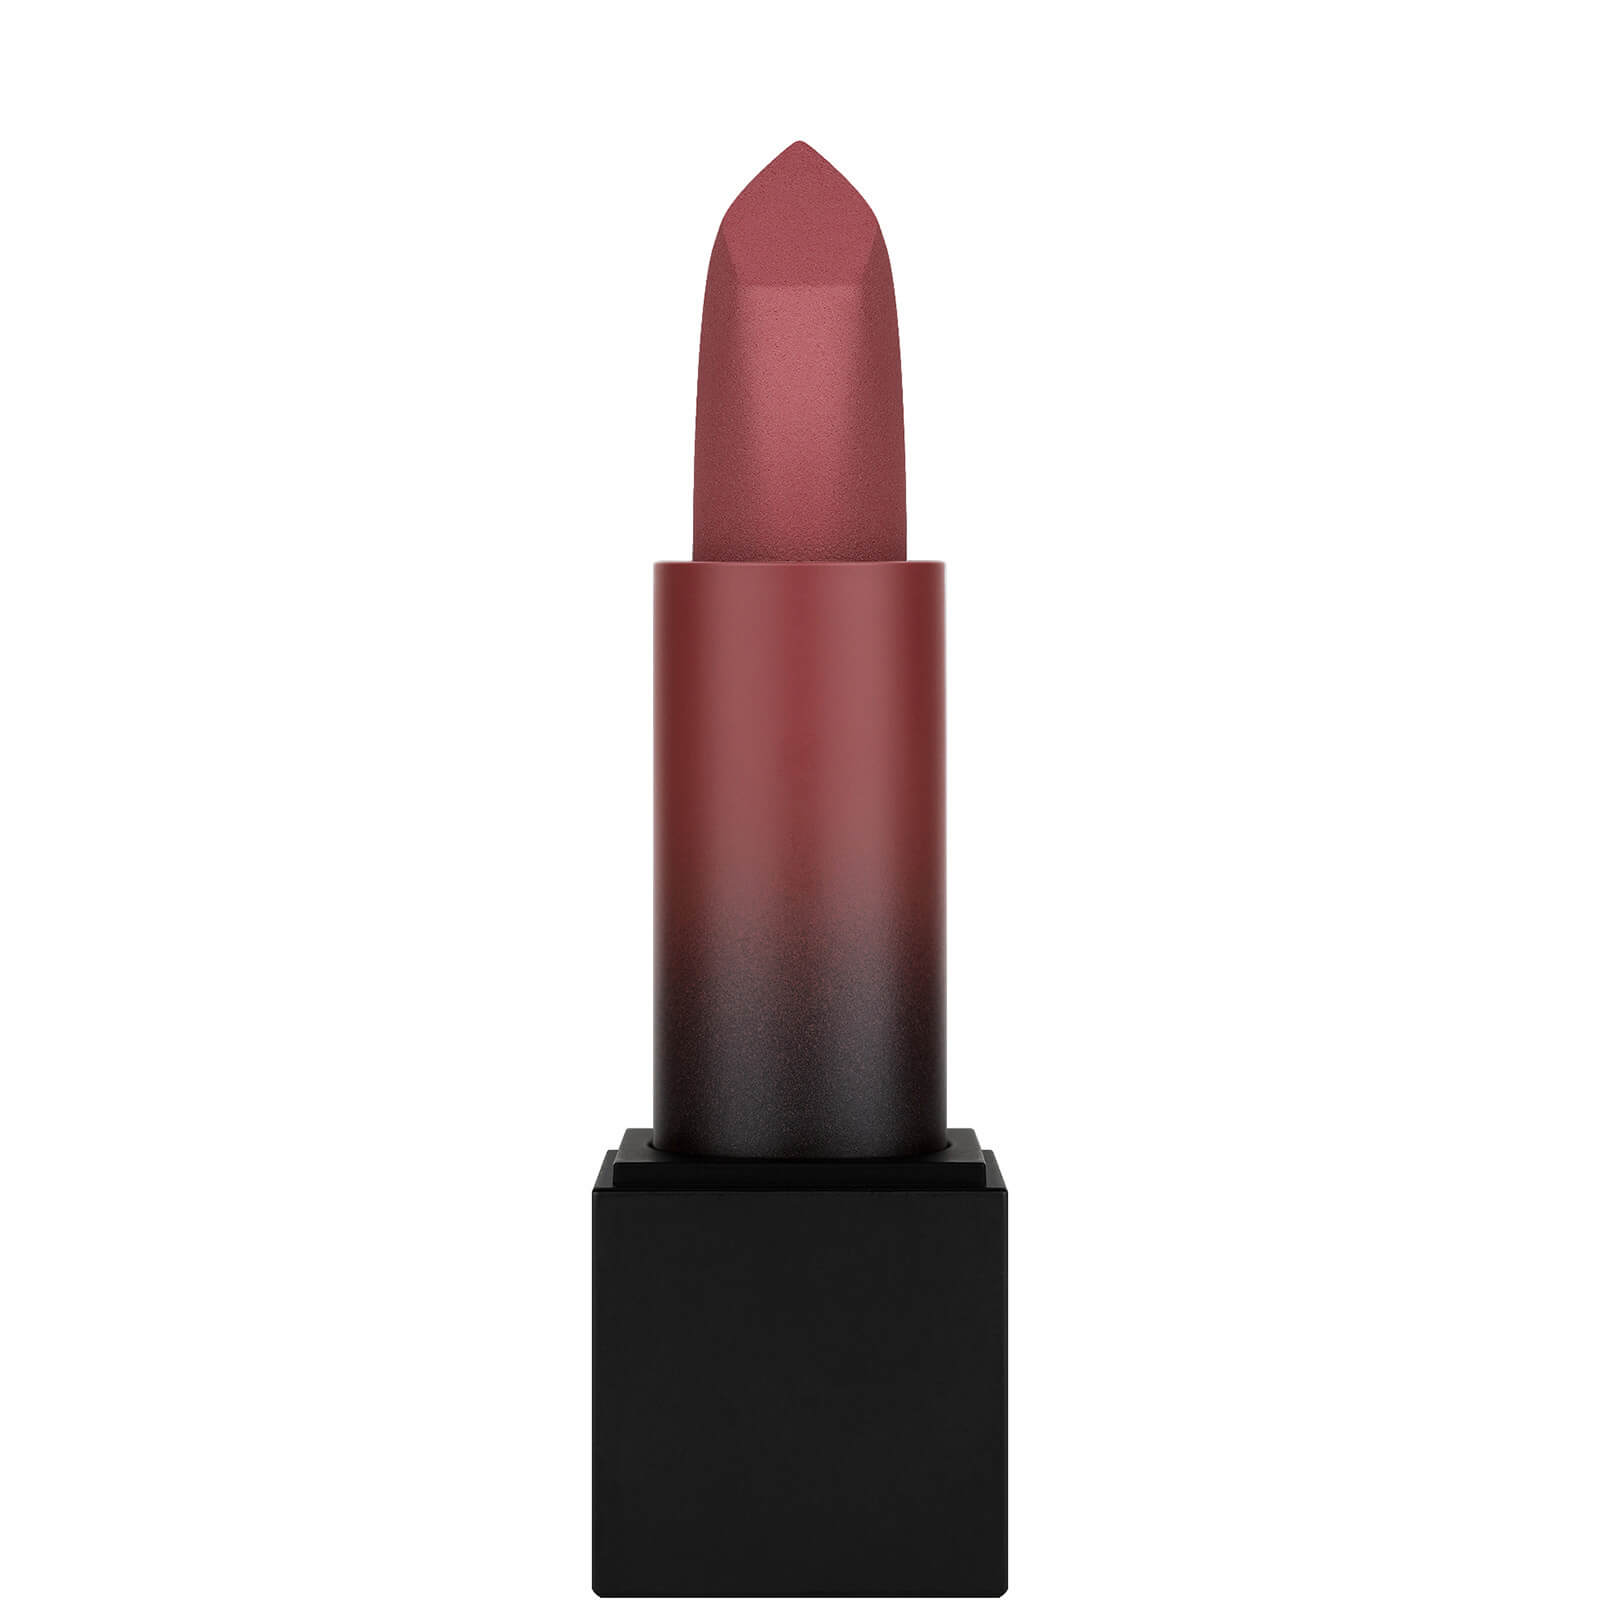 Photos - Lipstick & Lip Gloss Huda Beauty Power Bullet Matte Lipstick - Pay Day 